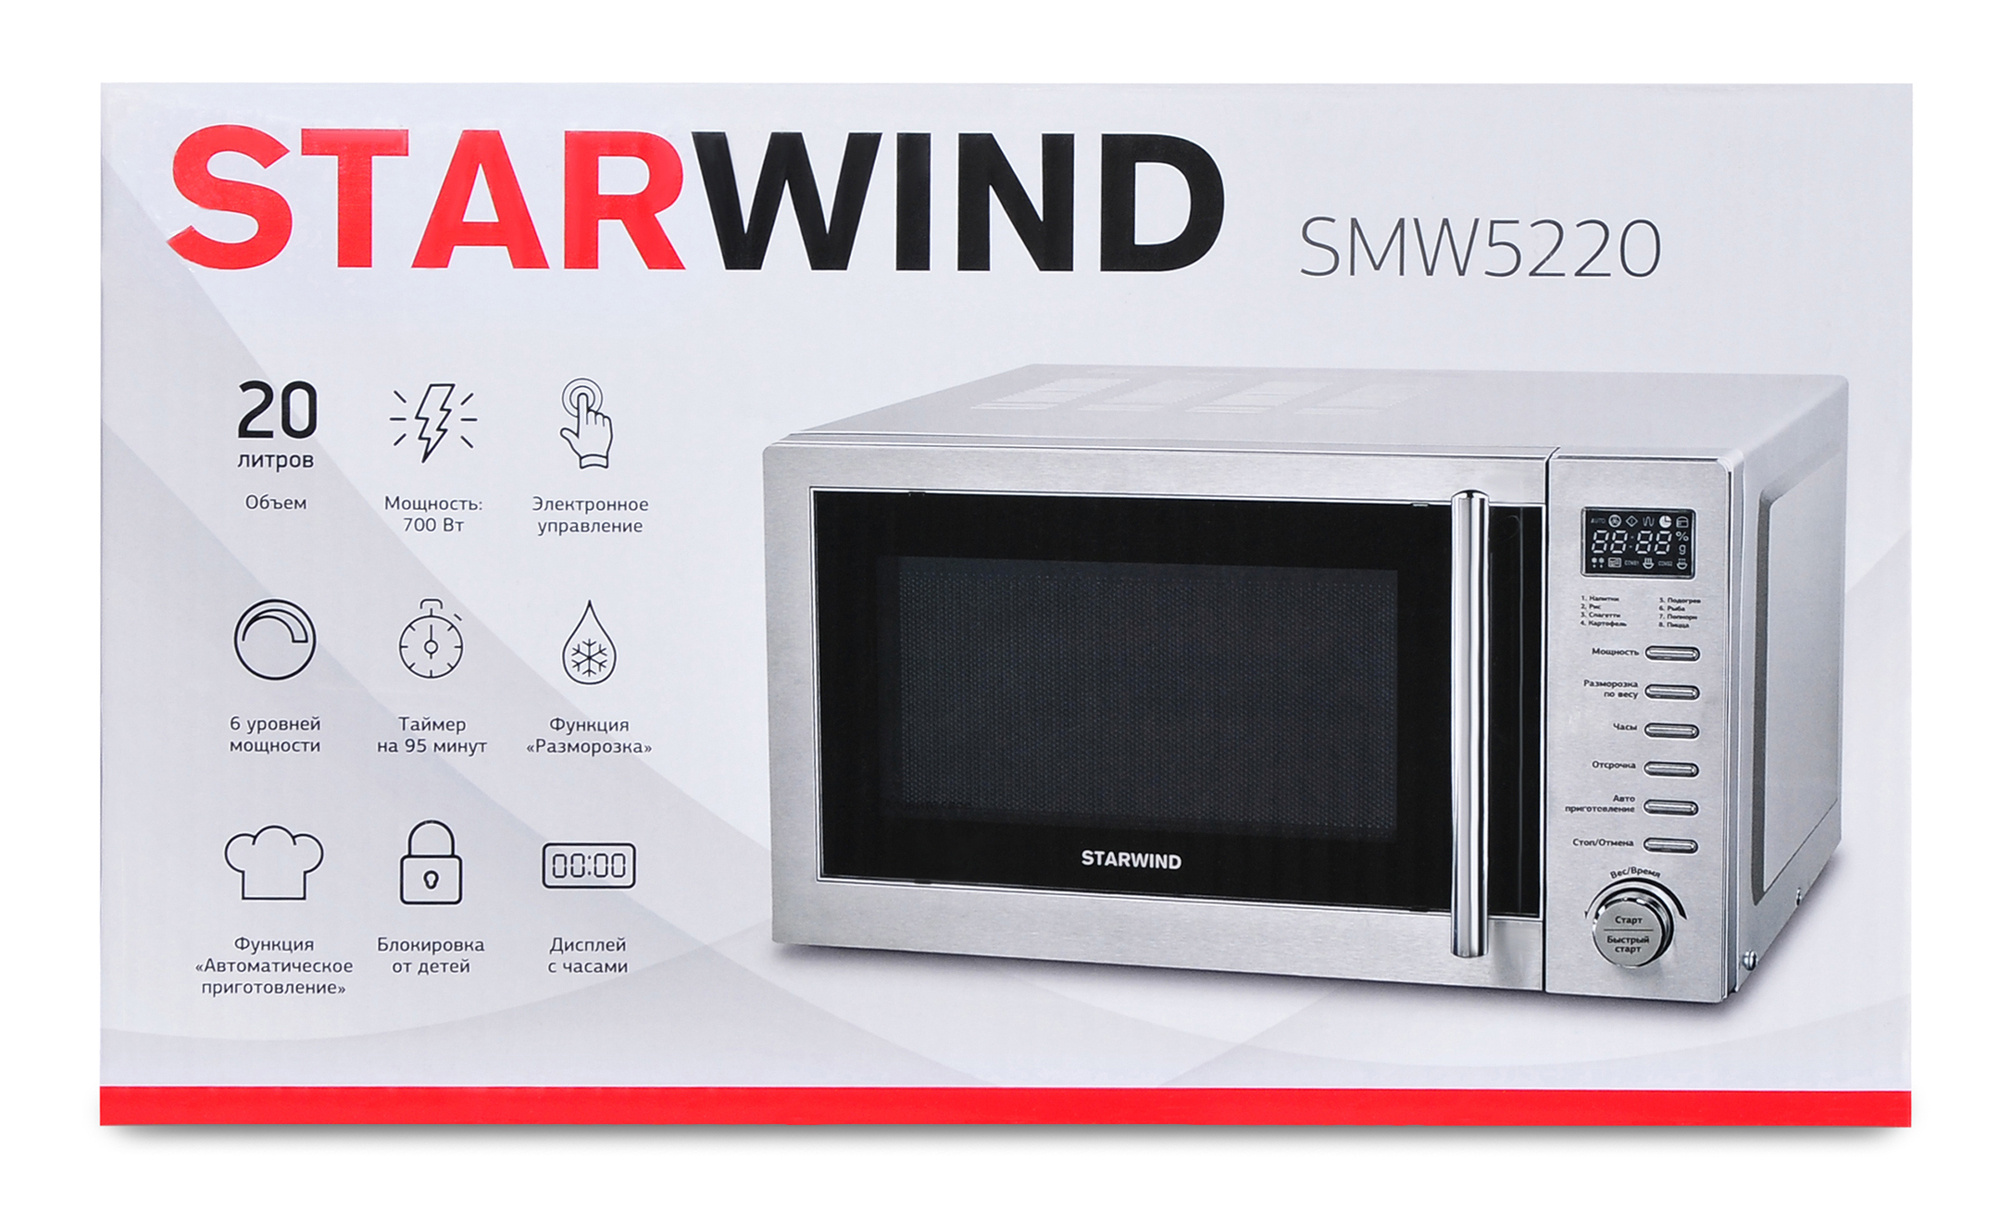 Микроволновая печь Starwind SMW5220 нержавеющая сталь (smw5220_g) от магазина Старвинд